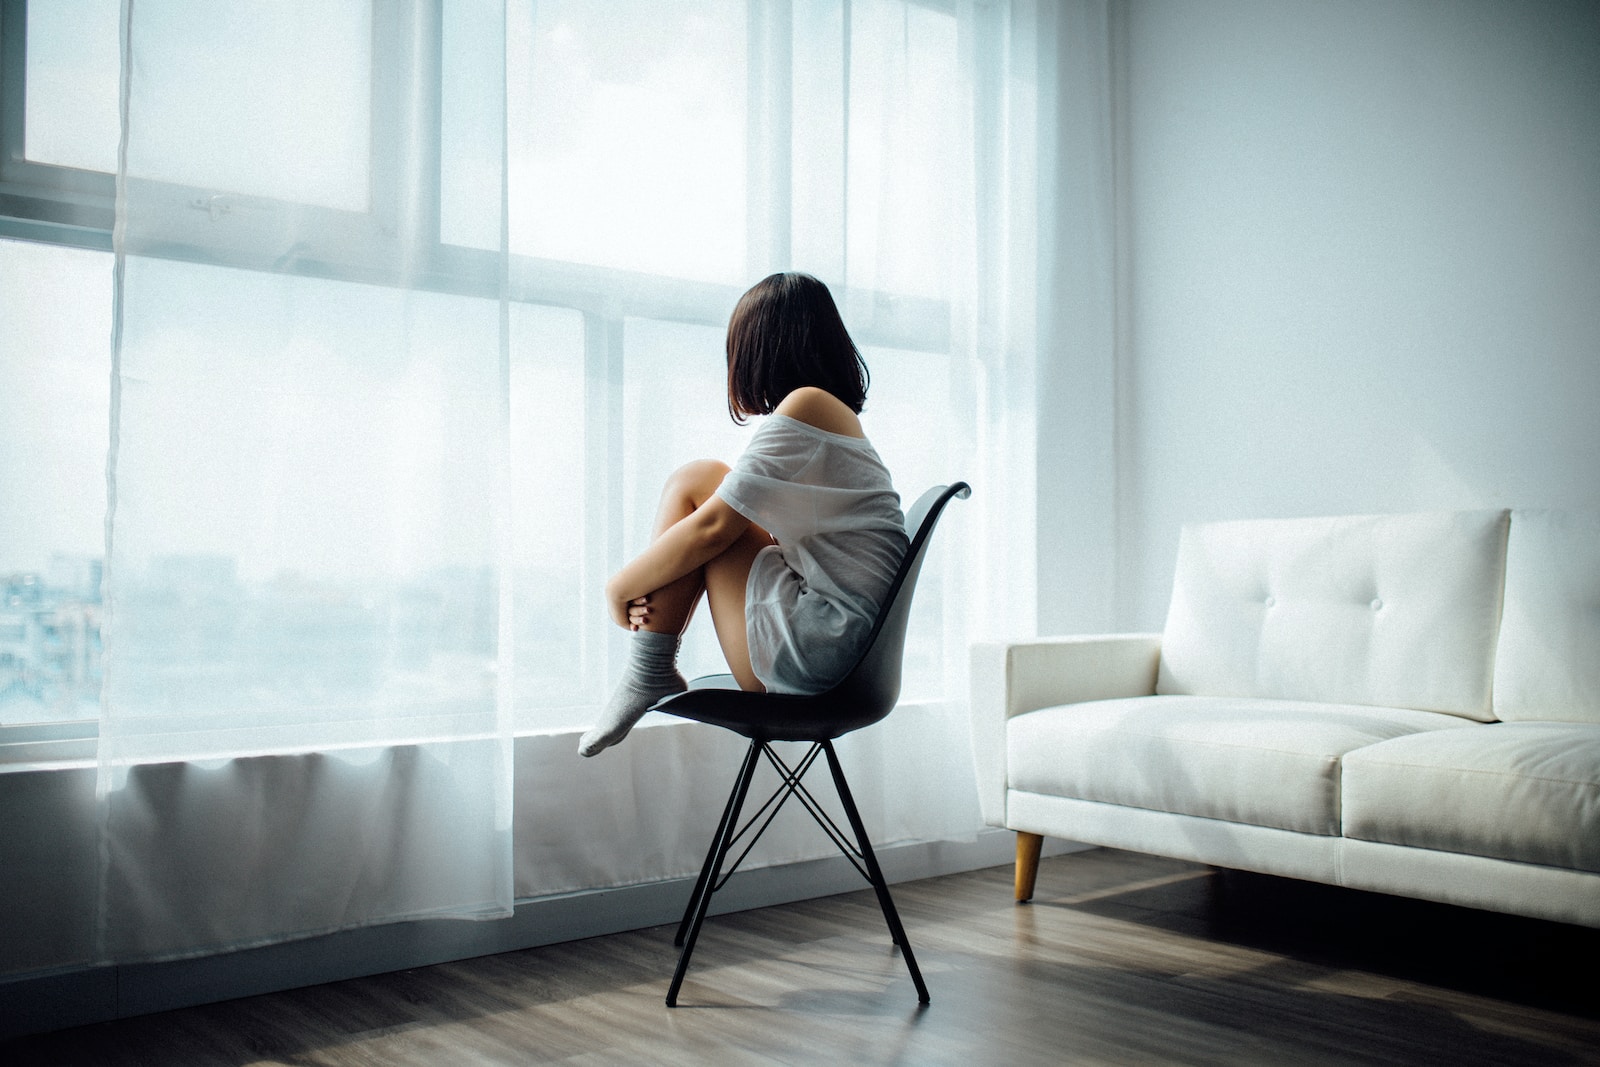 femme assise sur une chaise noire devant une fenêtre à panneaux de verre et rideaux blancs